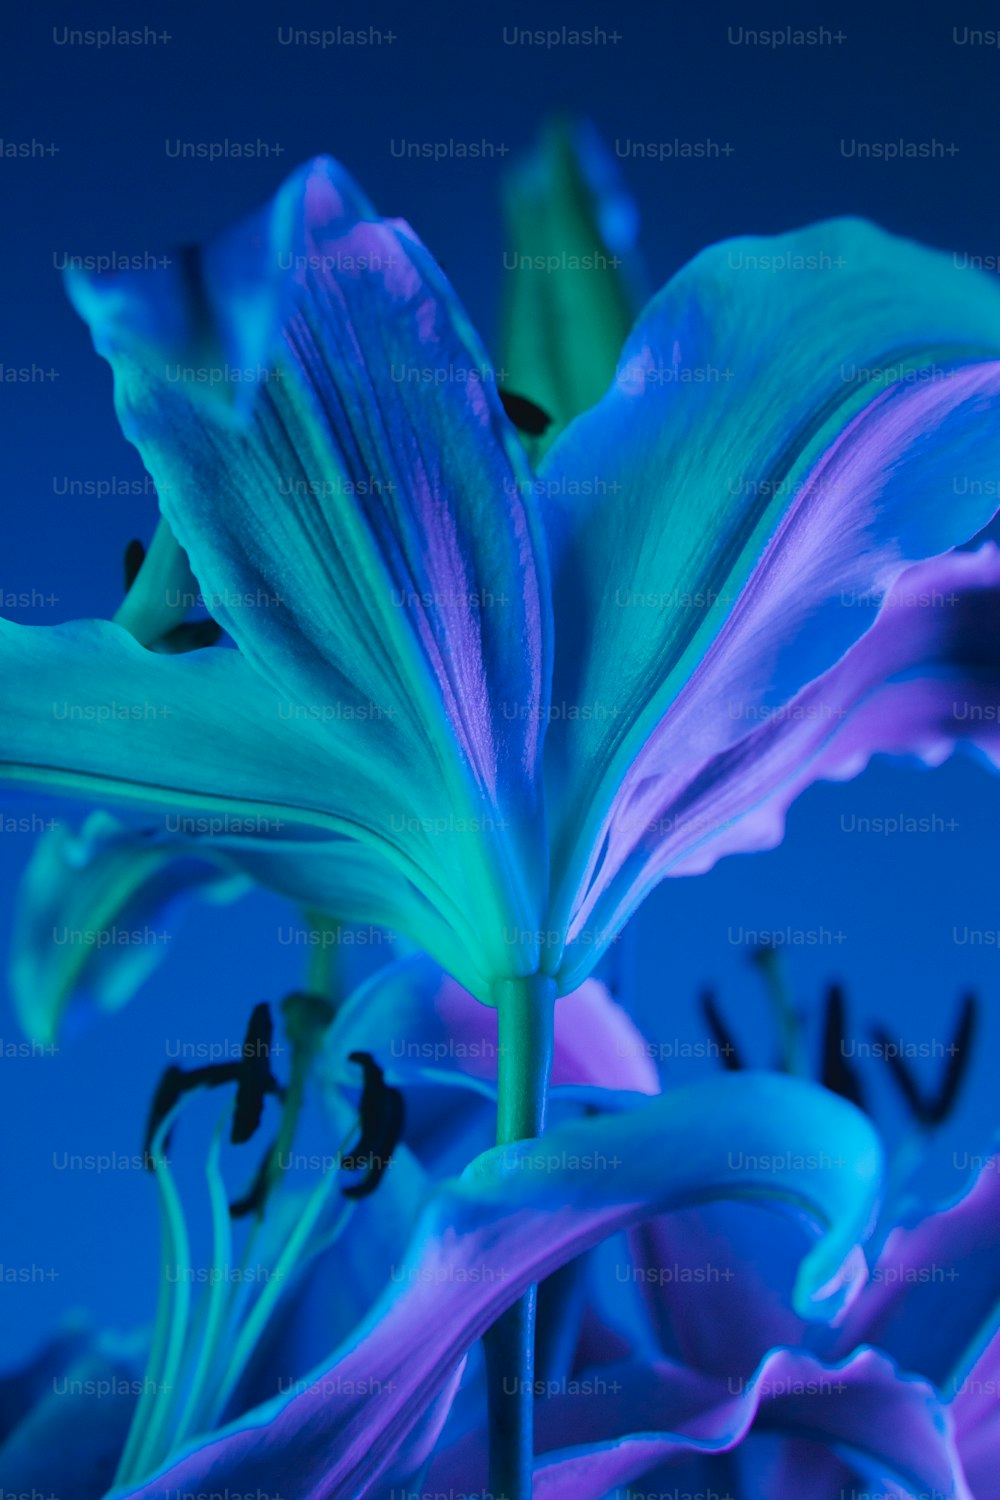 Un primer plano de una flor con un fondo azul